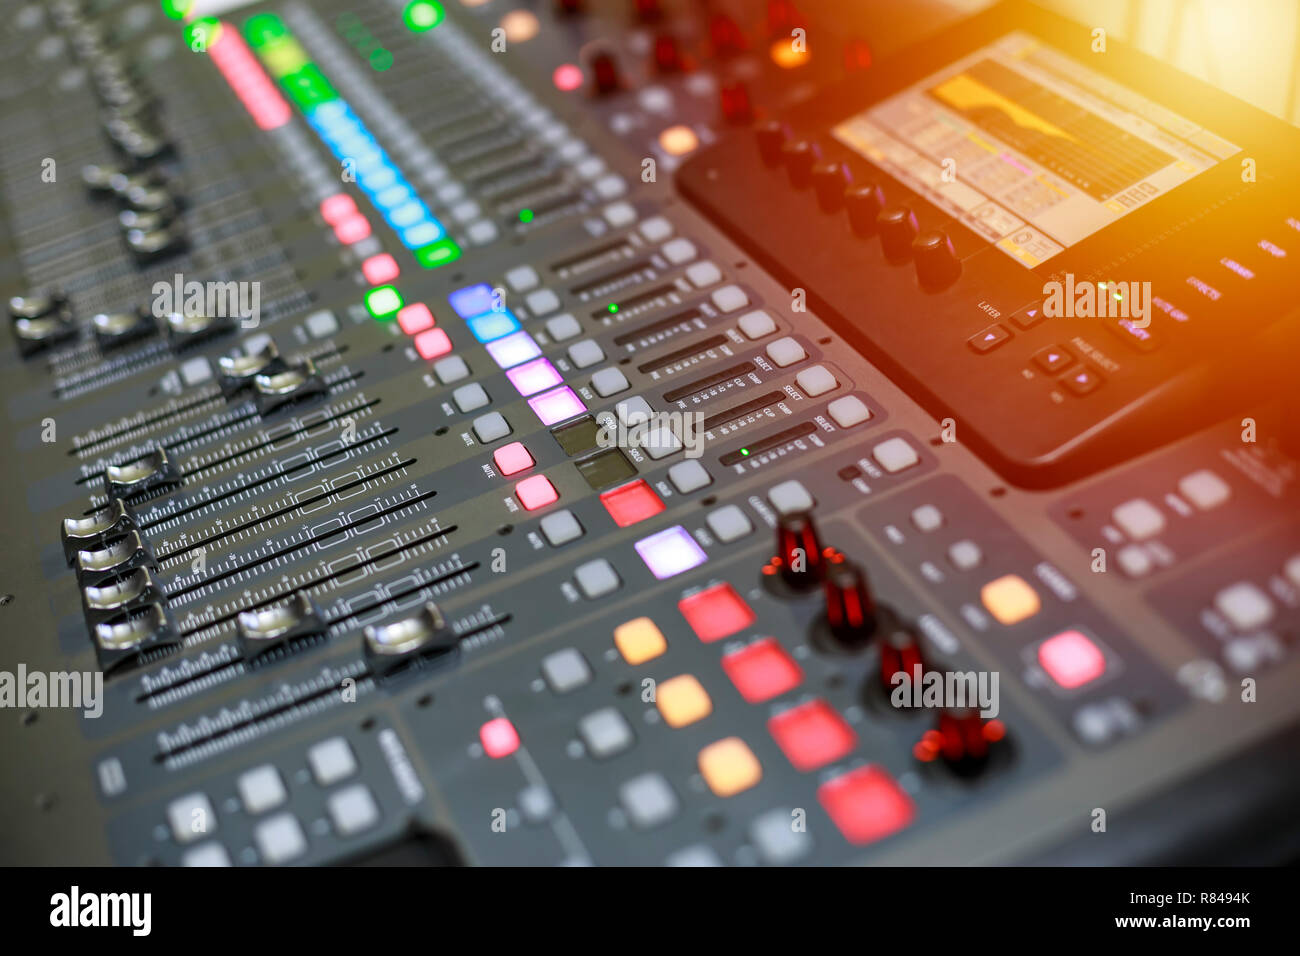 Son et mixage audio control panel avec des boutons et des curseurs. Des boutons de mixage audio conseil. Banque D'Images